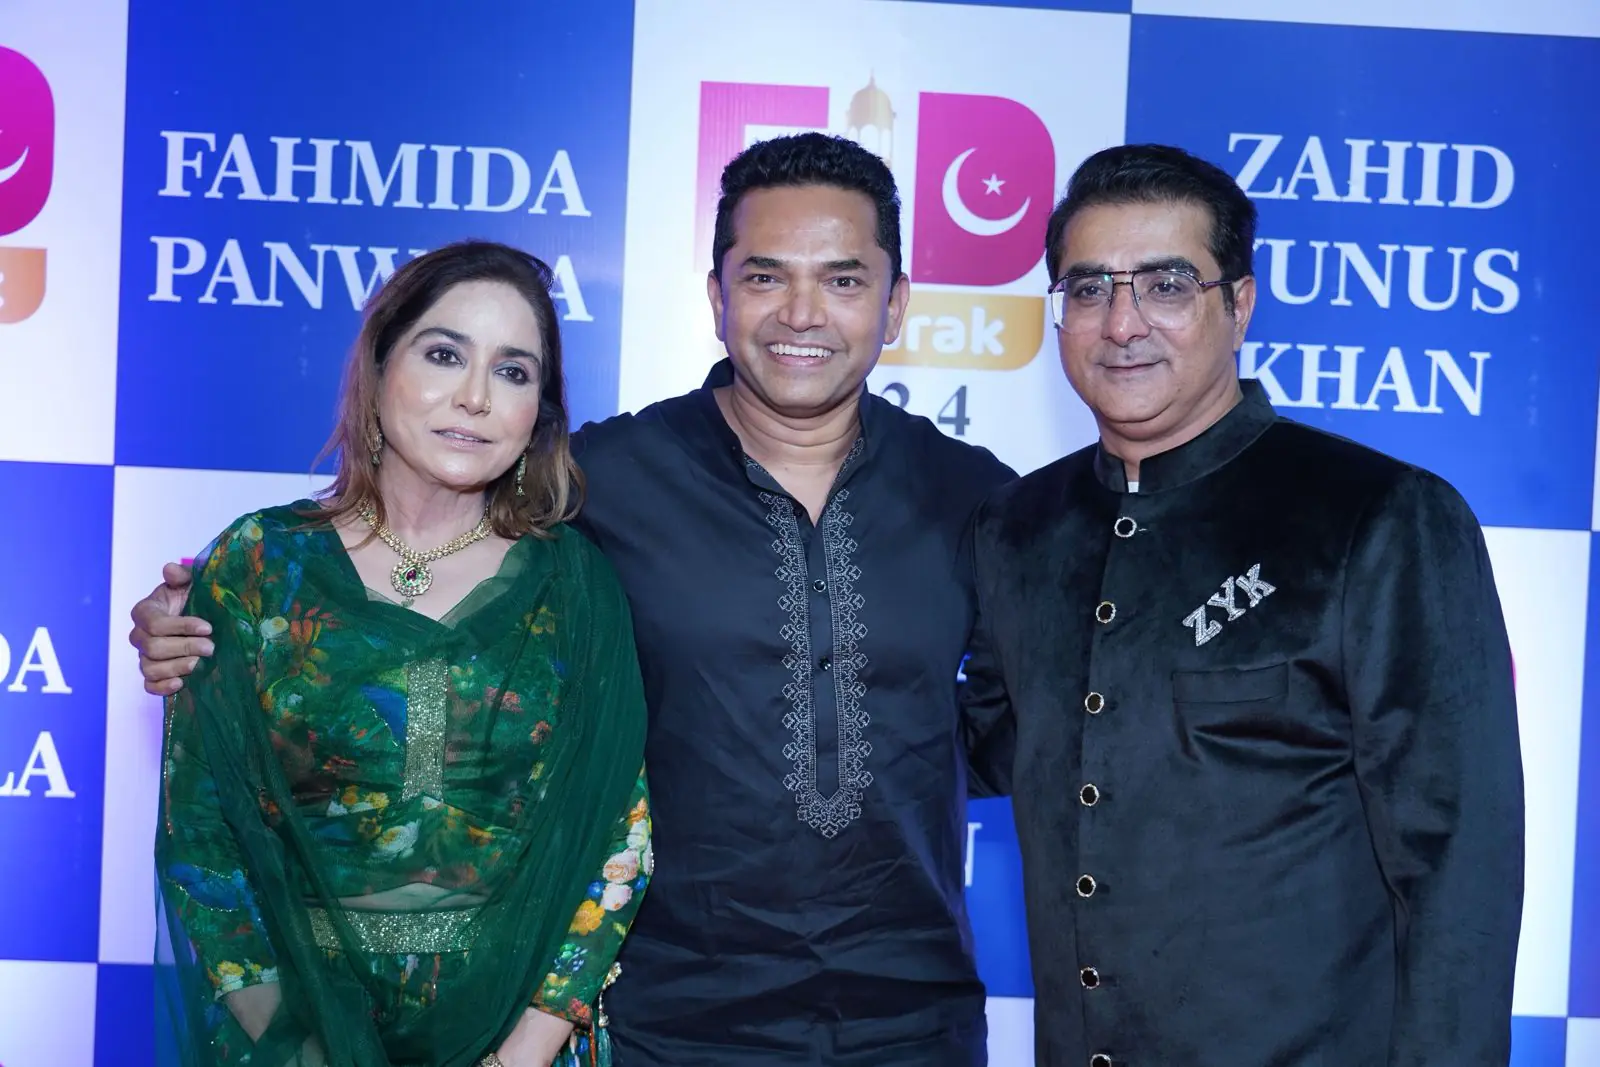 Zahid Yunus Khan, Mrs. Fahmida Panwala and Shaukat Shaikh's Jashne Eid Milan was a rocking affair!